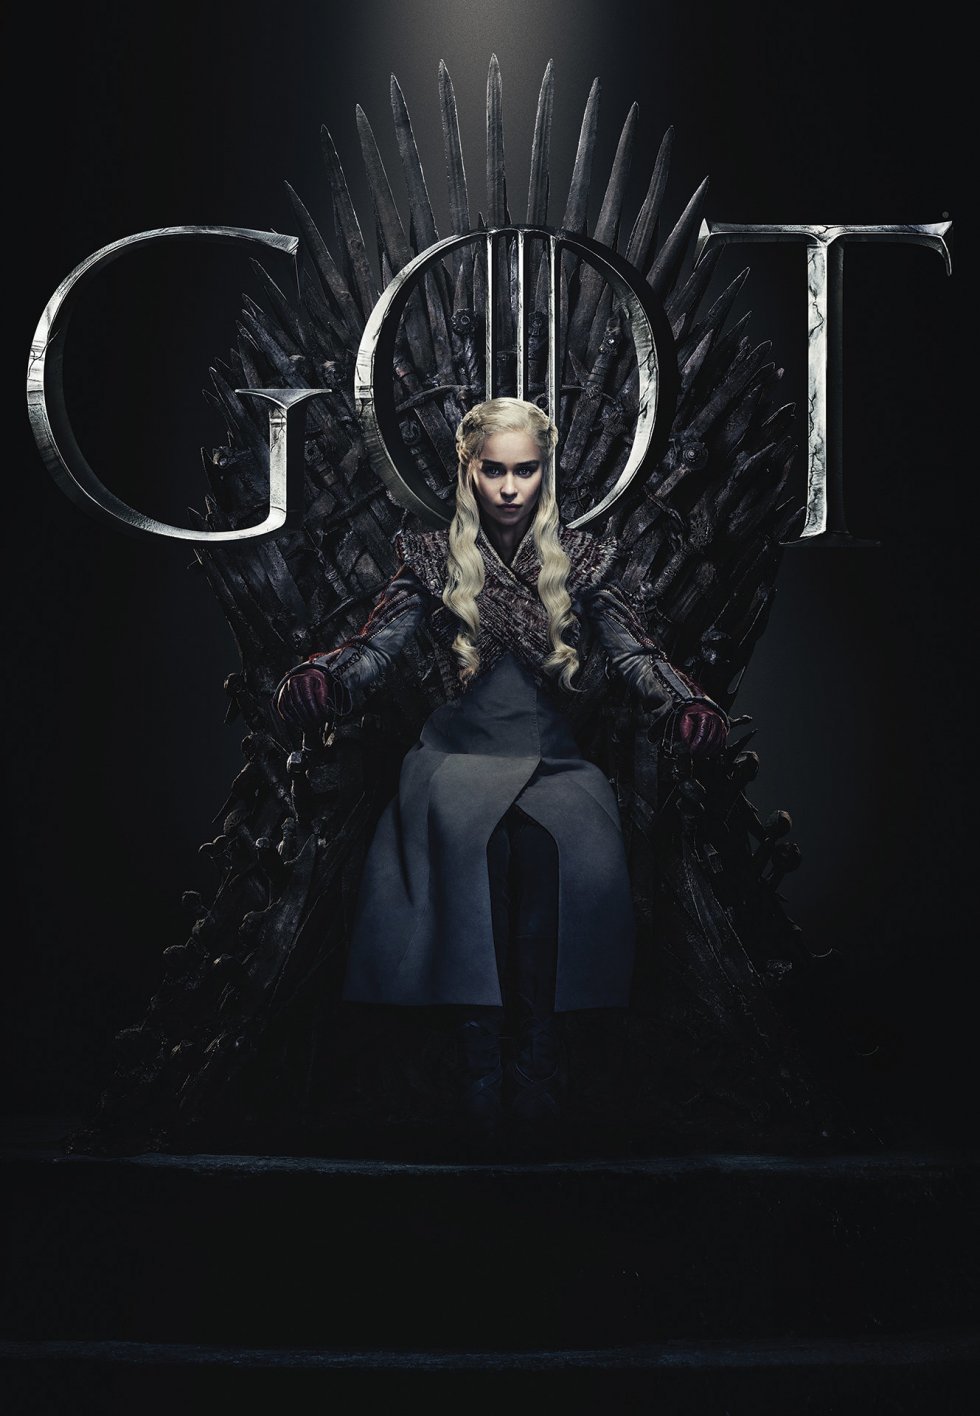 Game of Thrones lancerer dokumentar med premiere efter finalesæson